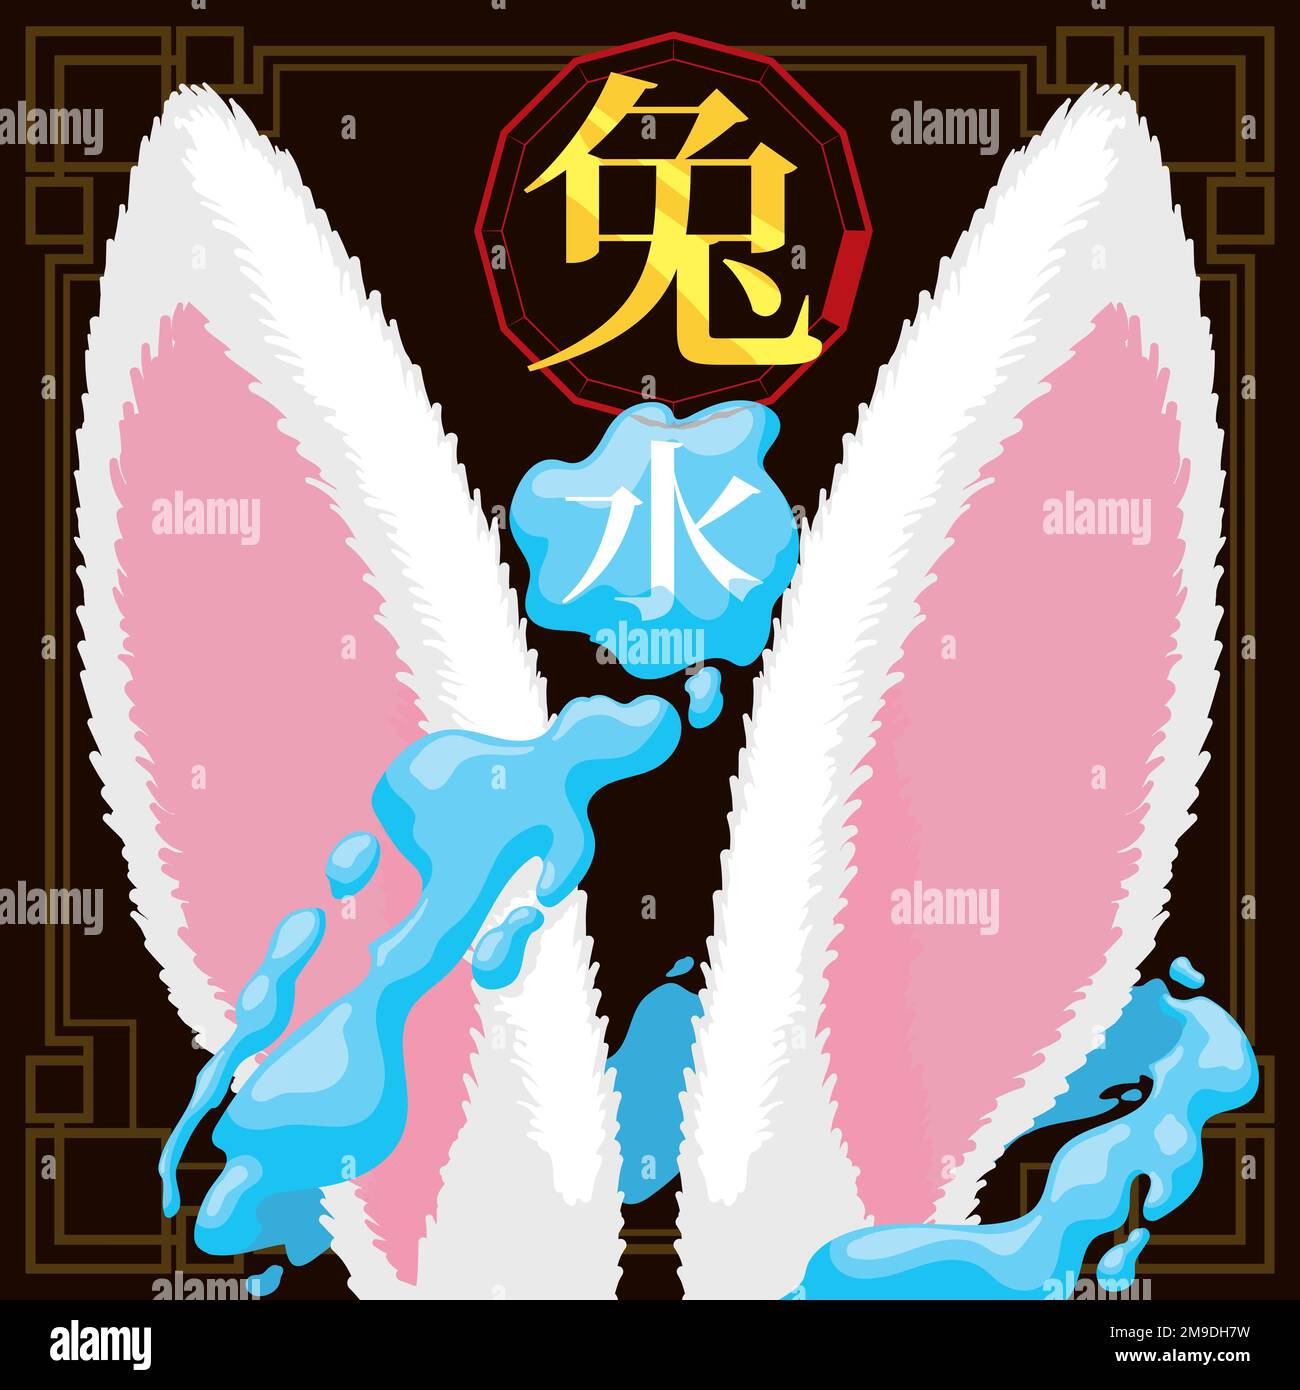 Orejas de conejo blancas con salpicaduras de agua a su alrededor que conmemoran este animal y elemento del zodiaco (textos escritos en kanji chino). Ilustración del Vector